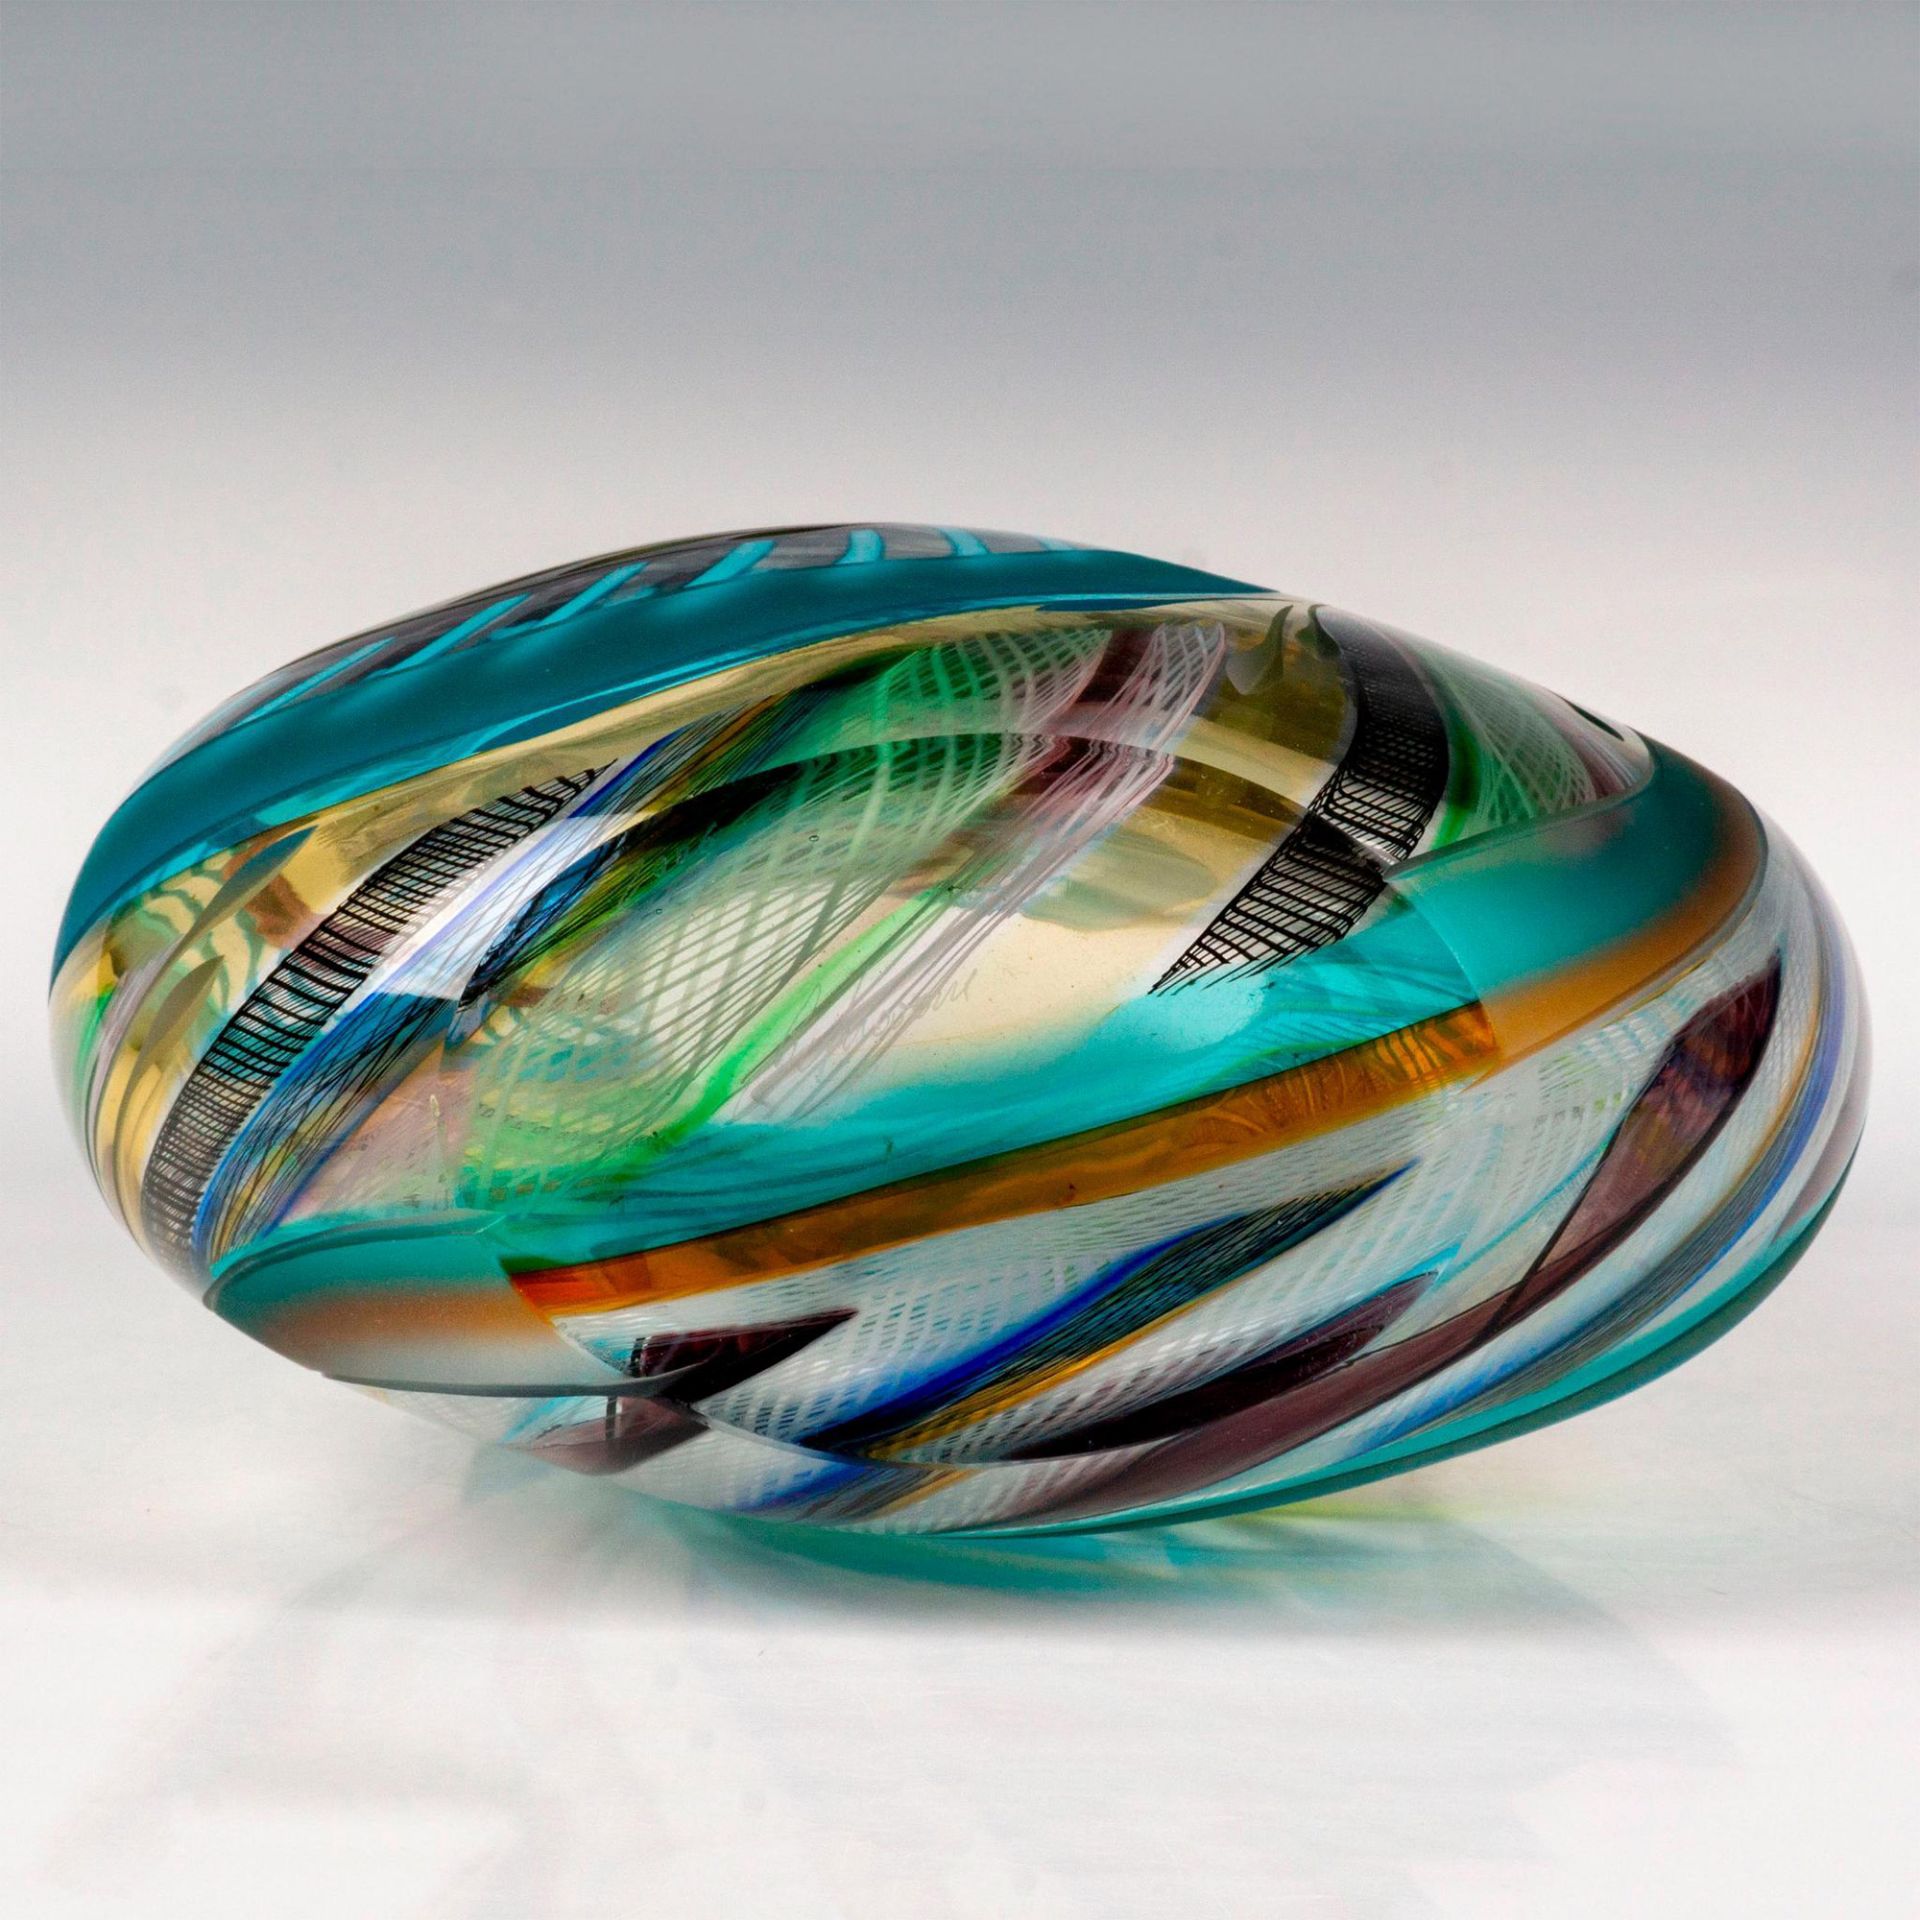 Rare Murano Glass Massimiliano Schiavon Vase, Signed - Image 3 of 4